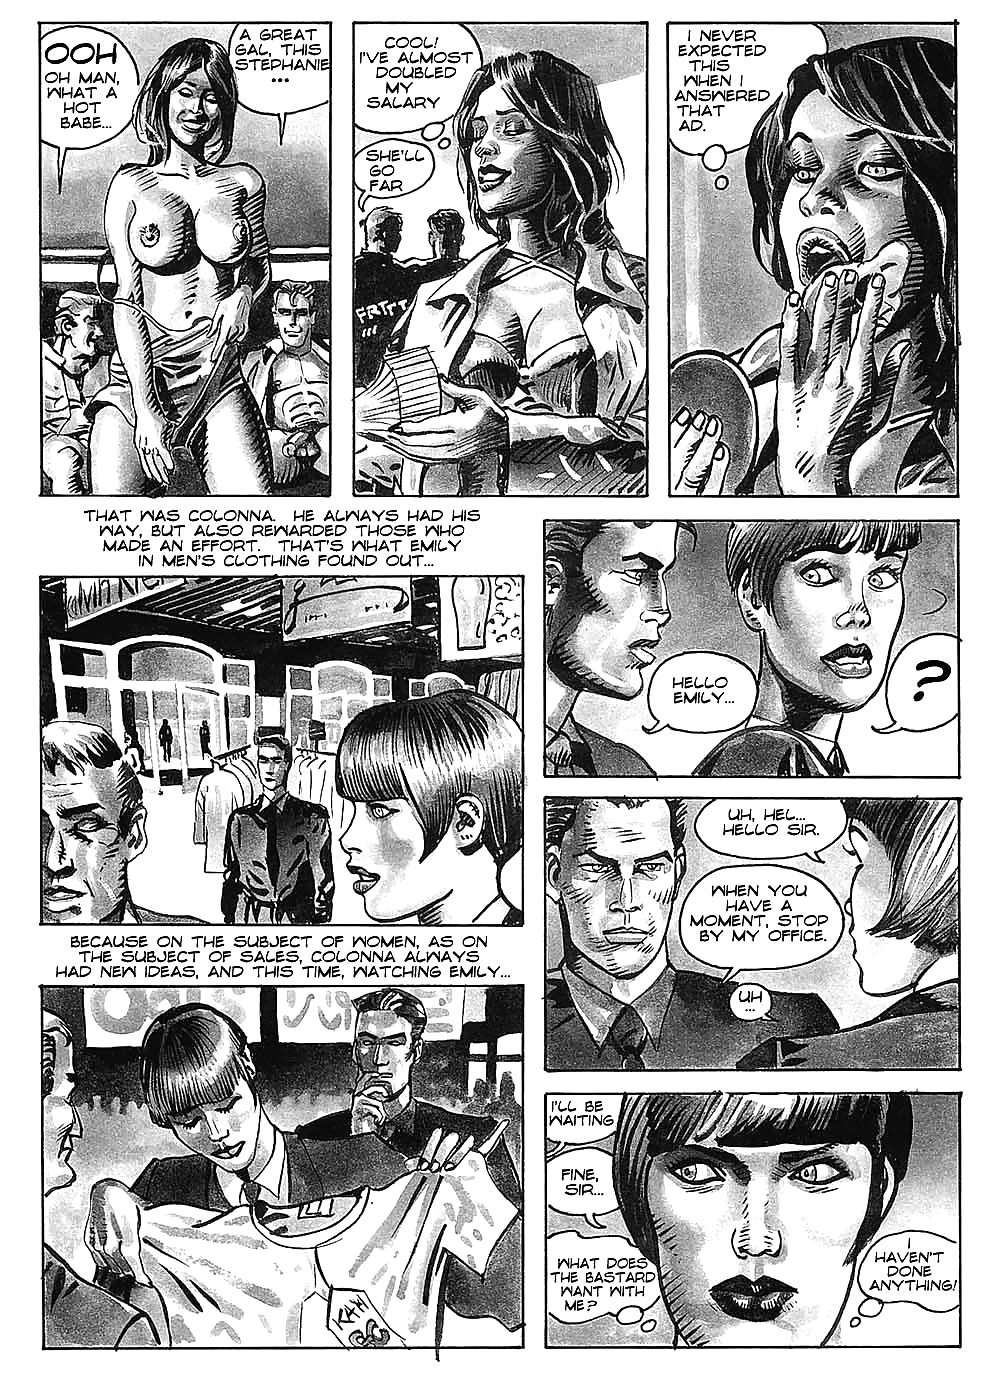 Hot comics 52 #19539802